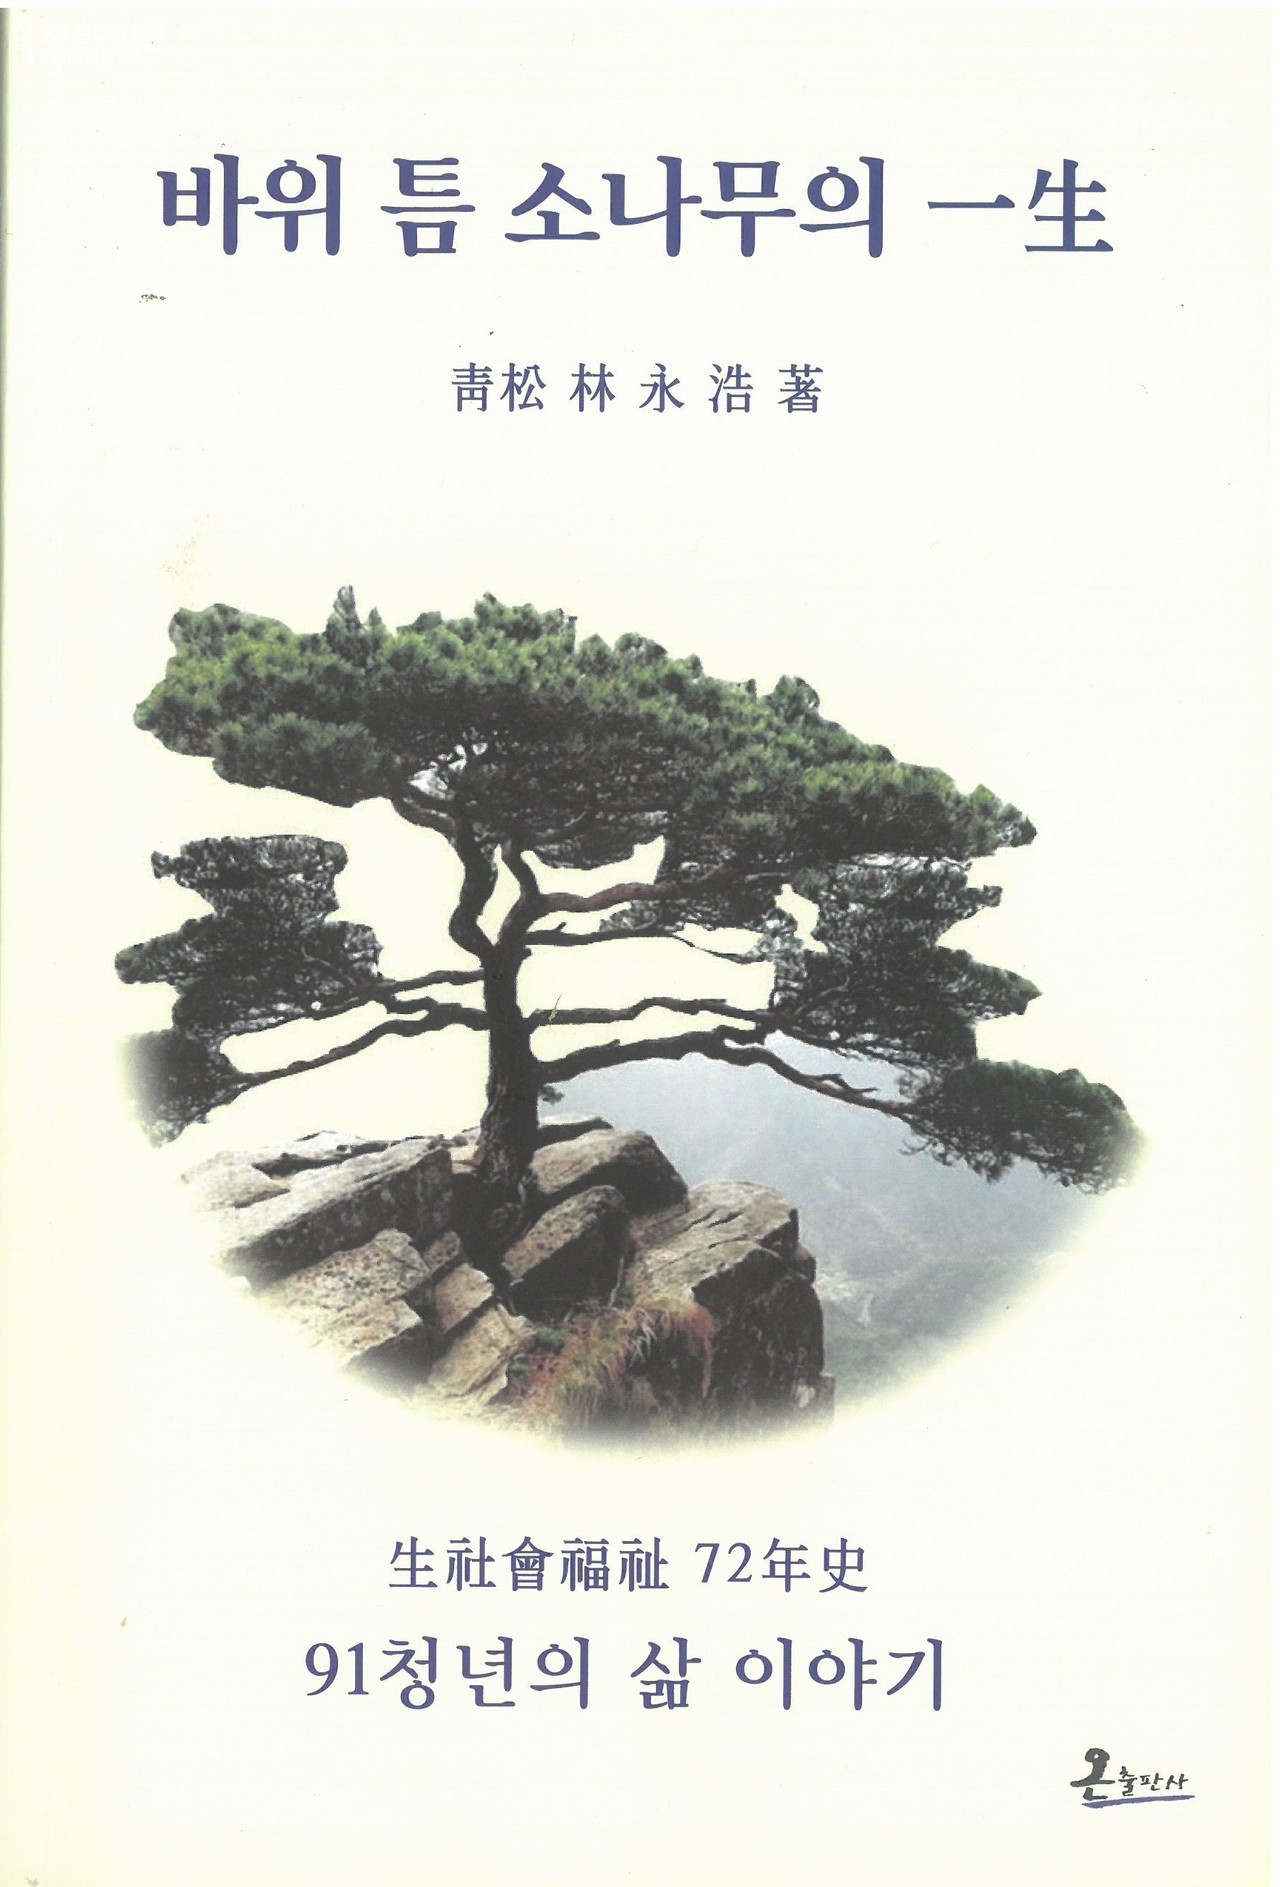 임영호 성림복지재단 이사장이 발간한 ‘바위 틈 소나무의 一生’ 책 표지